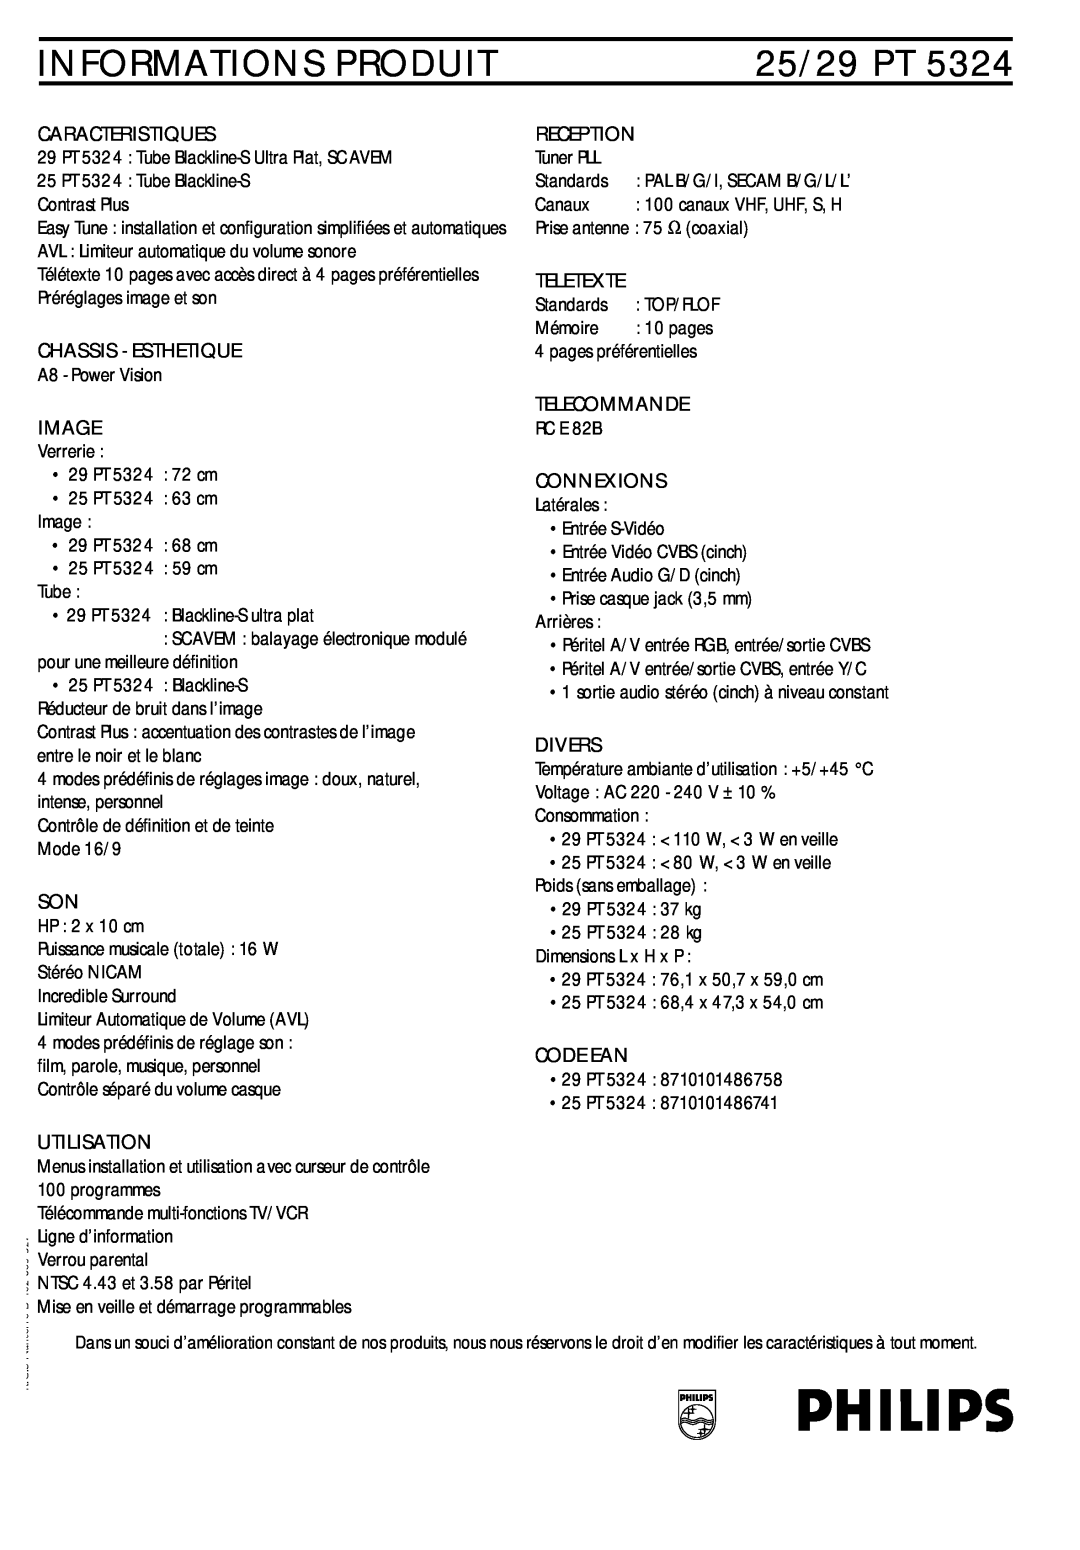 Philips 25/29PT5324 manual Informations Produit, 25/29 PT 